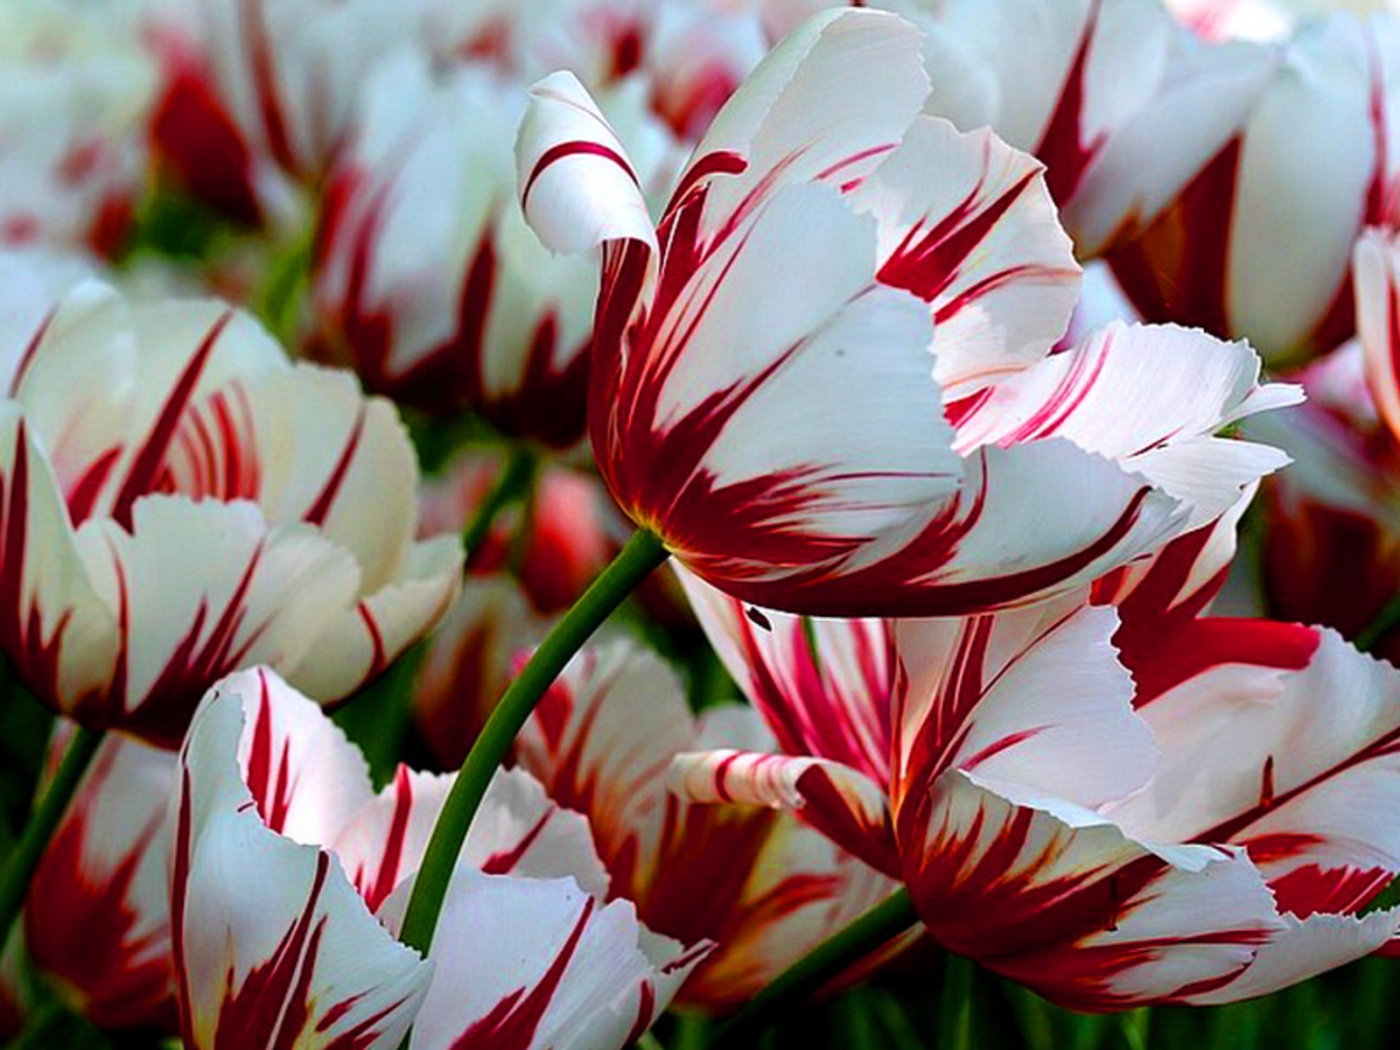 Descarga gratuita de fondo de pantalla para móvil de Plantas, Tulipanes.